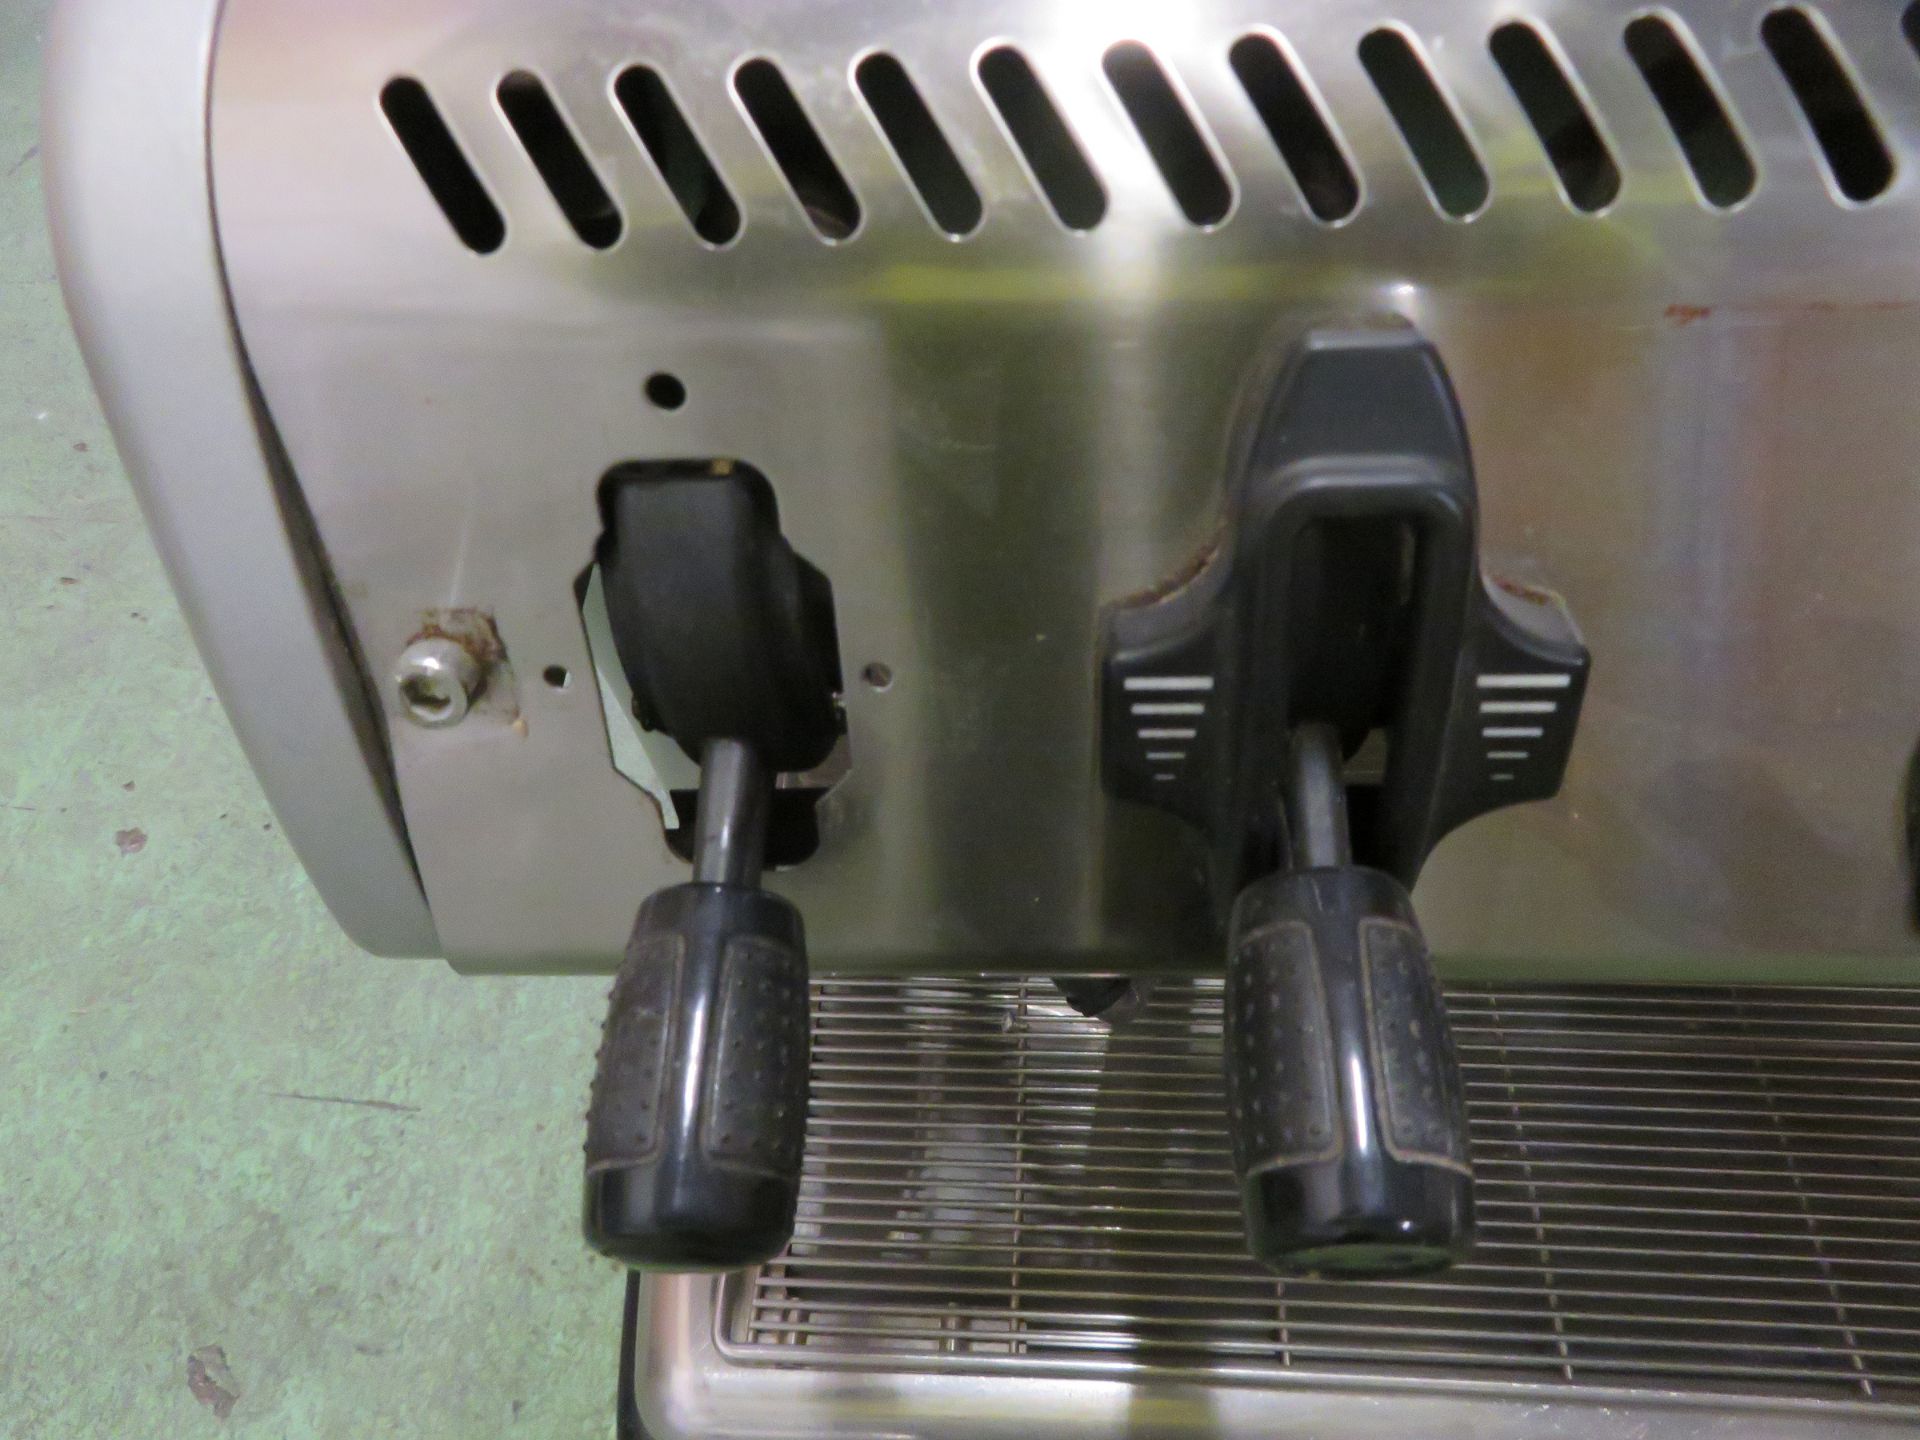 La Spaziole S5 2 traditional espresso coffee machine - Bild 5 aus 6